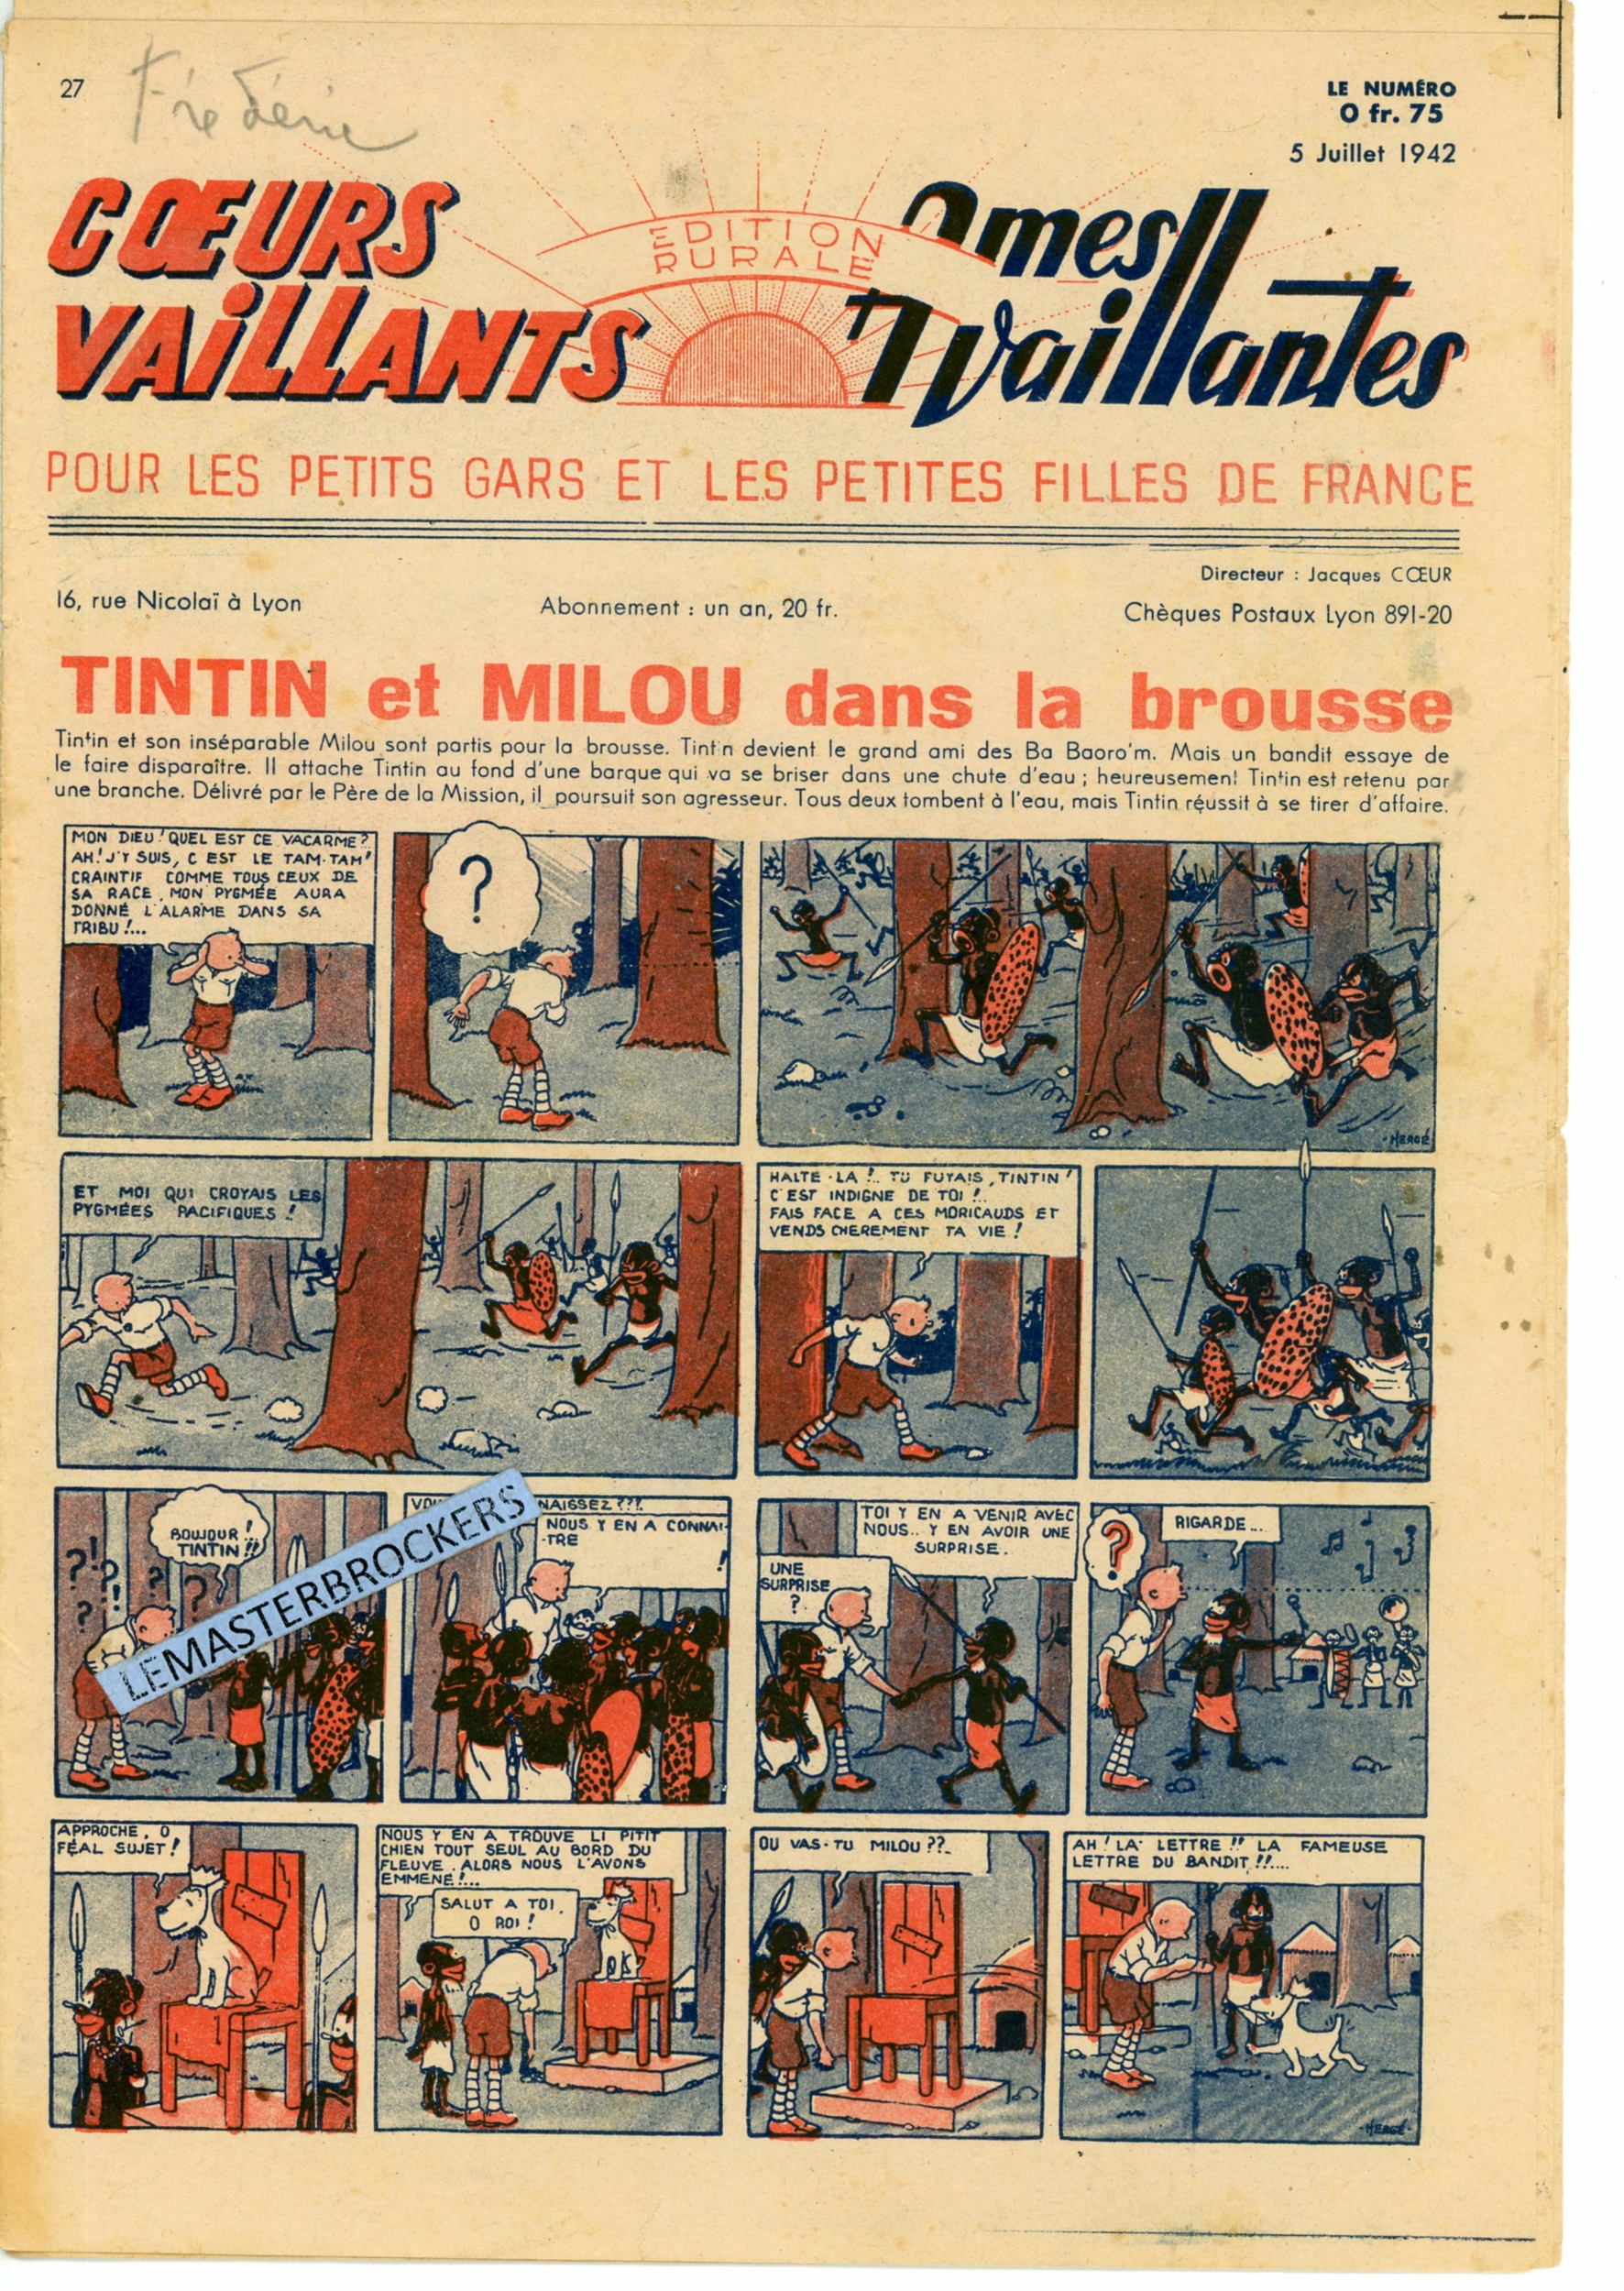 TINTIN ET MILOU DANS LA BROUSSE - COEURS VAILLANTS N° 27 - SUPPLÉMENT BIMENSUEL 5 JUILLET 1942